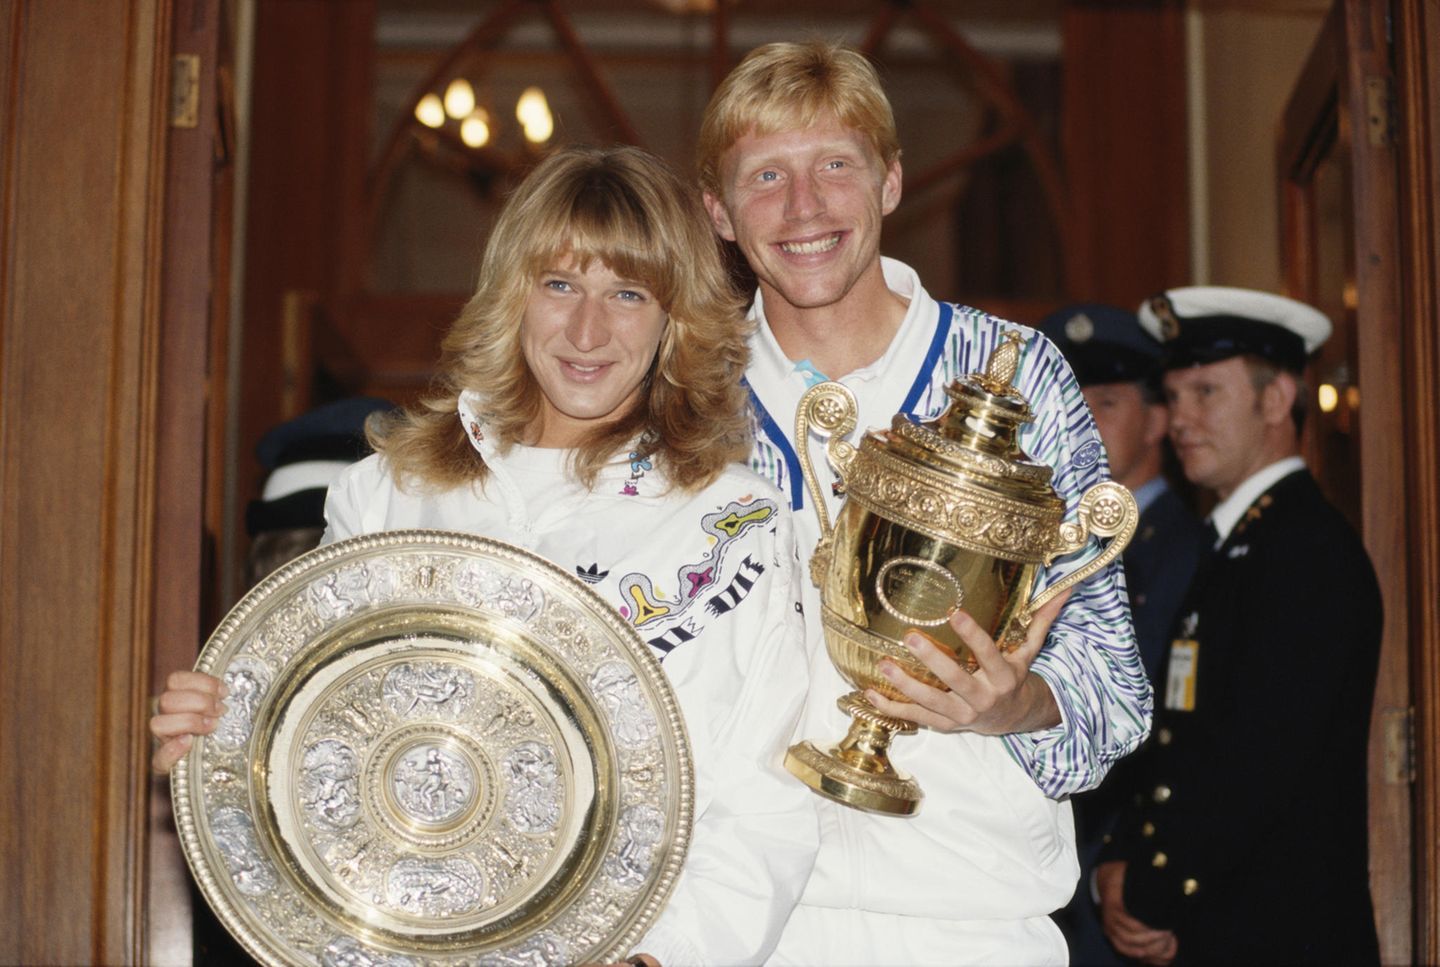 Steffi Graf und Boris Becker posieren 1989 nach ihrem Wimbledon-Sieg im Damen- bzw. Männer-Einzel mit ihren Trophäen.